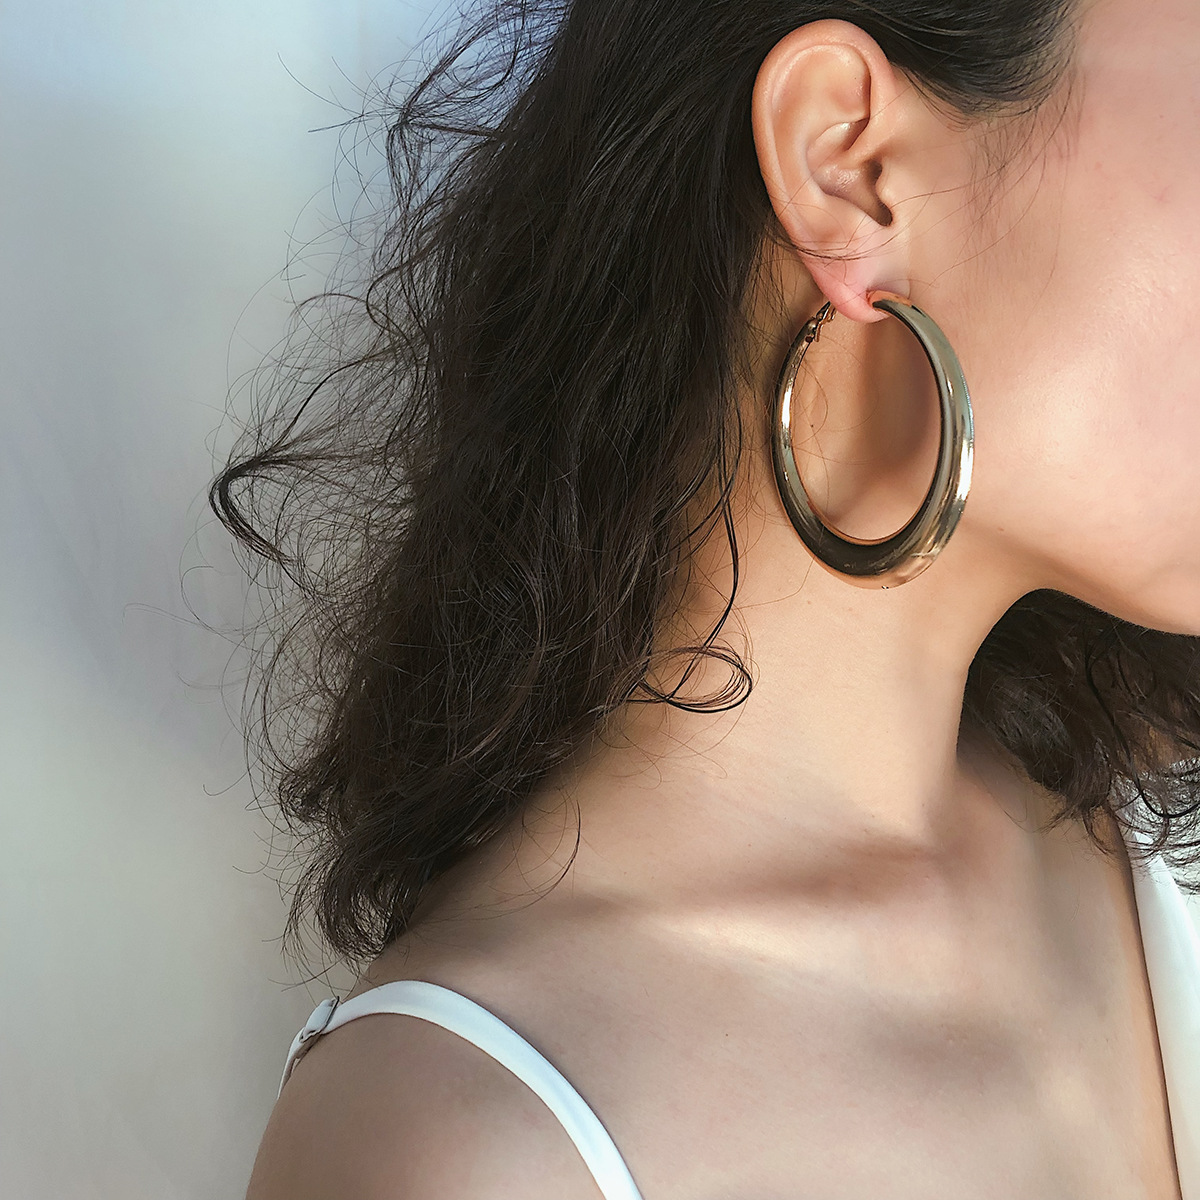 B1495 Chunky Gold Hoop Earrings for Women Cute Fashion Hypoallergenic earrings Minimalist Jewelry Gift